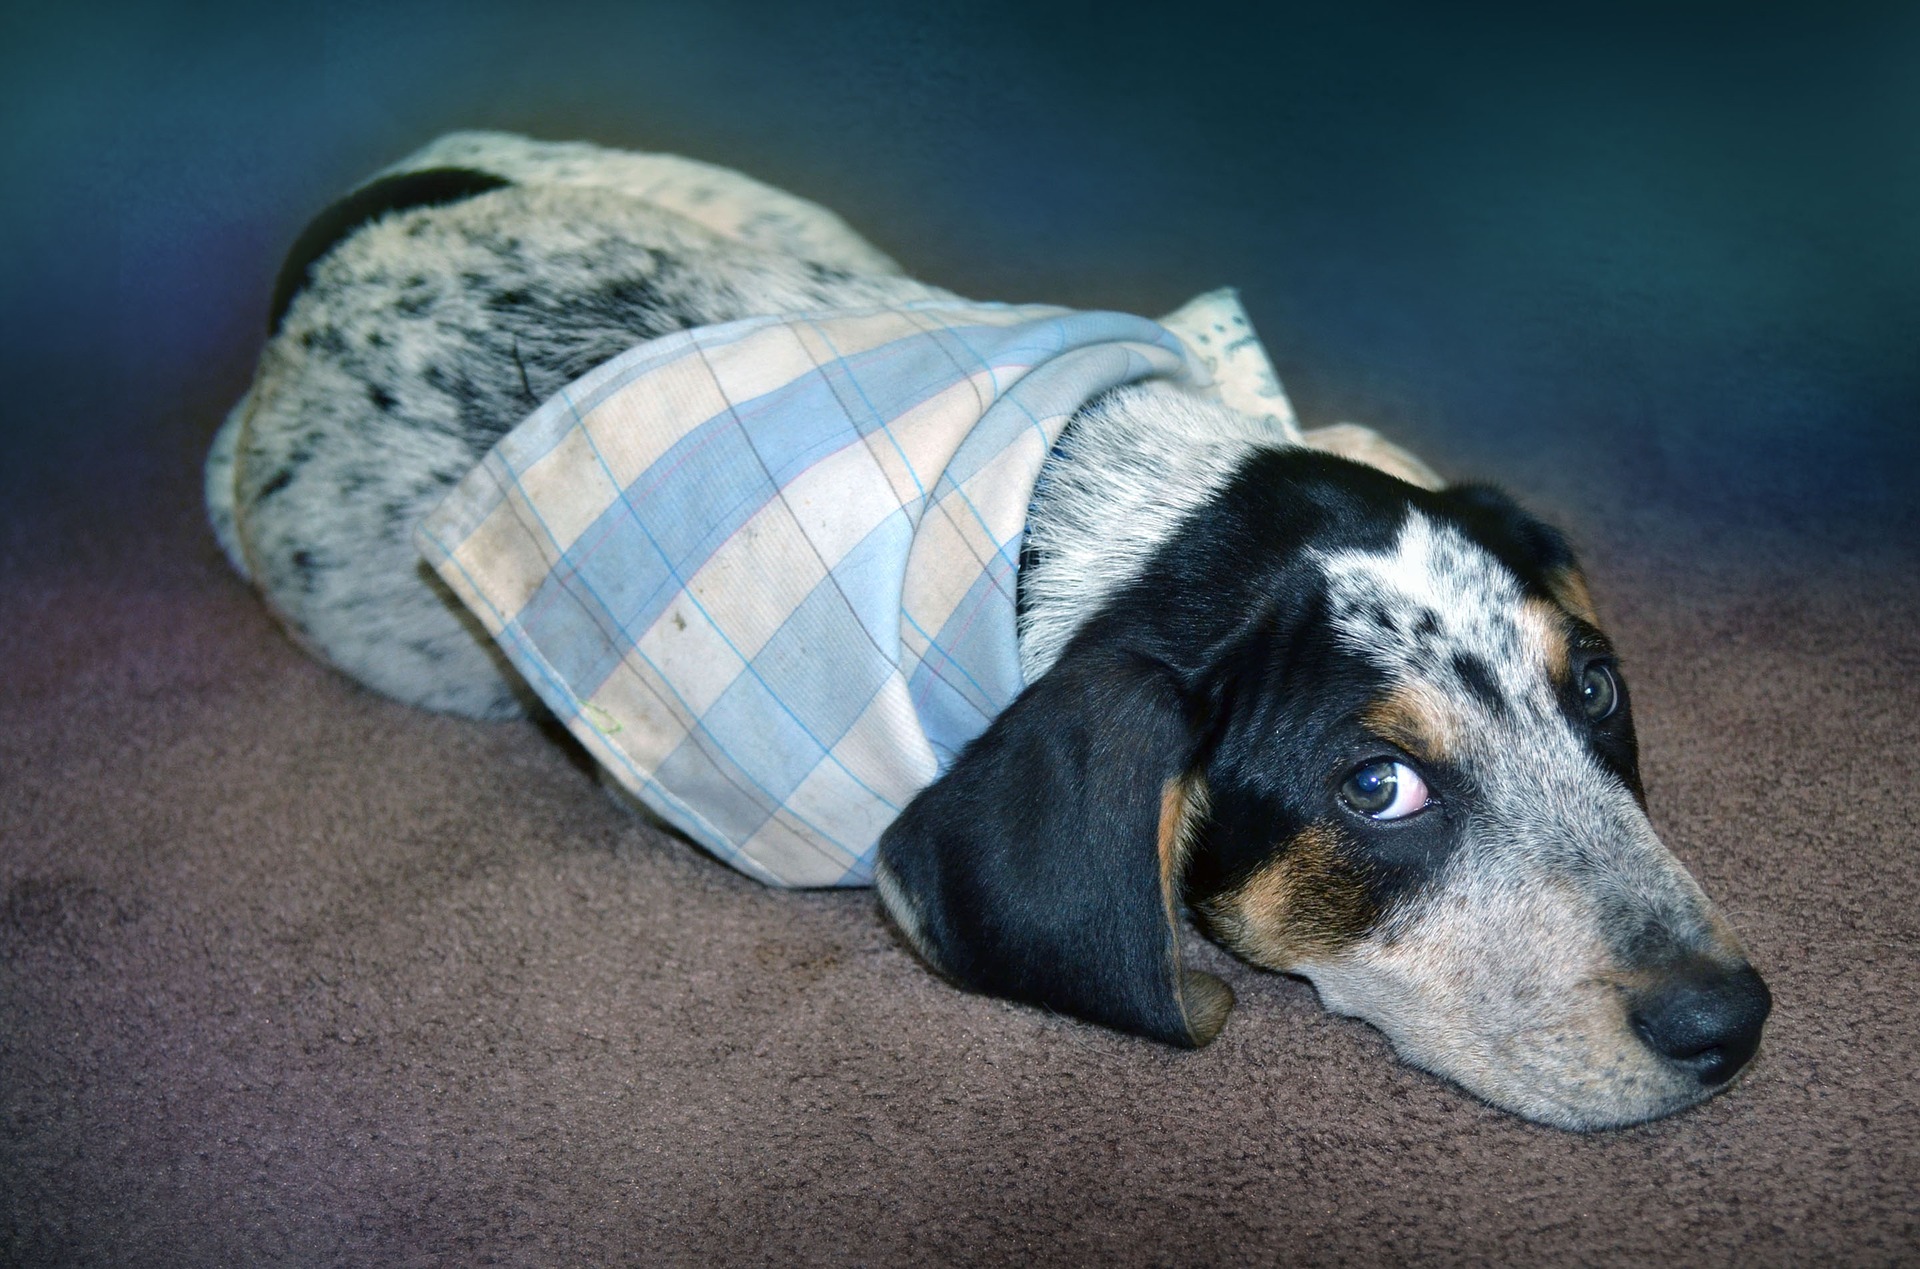 Husten bei einem Hund ist das häufigste Symptom einer Atemwegsinfektion - von Erkältung über Tracheitis oder Bronchitis bis hin zu Lungenentzündung.